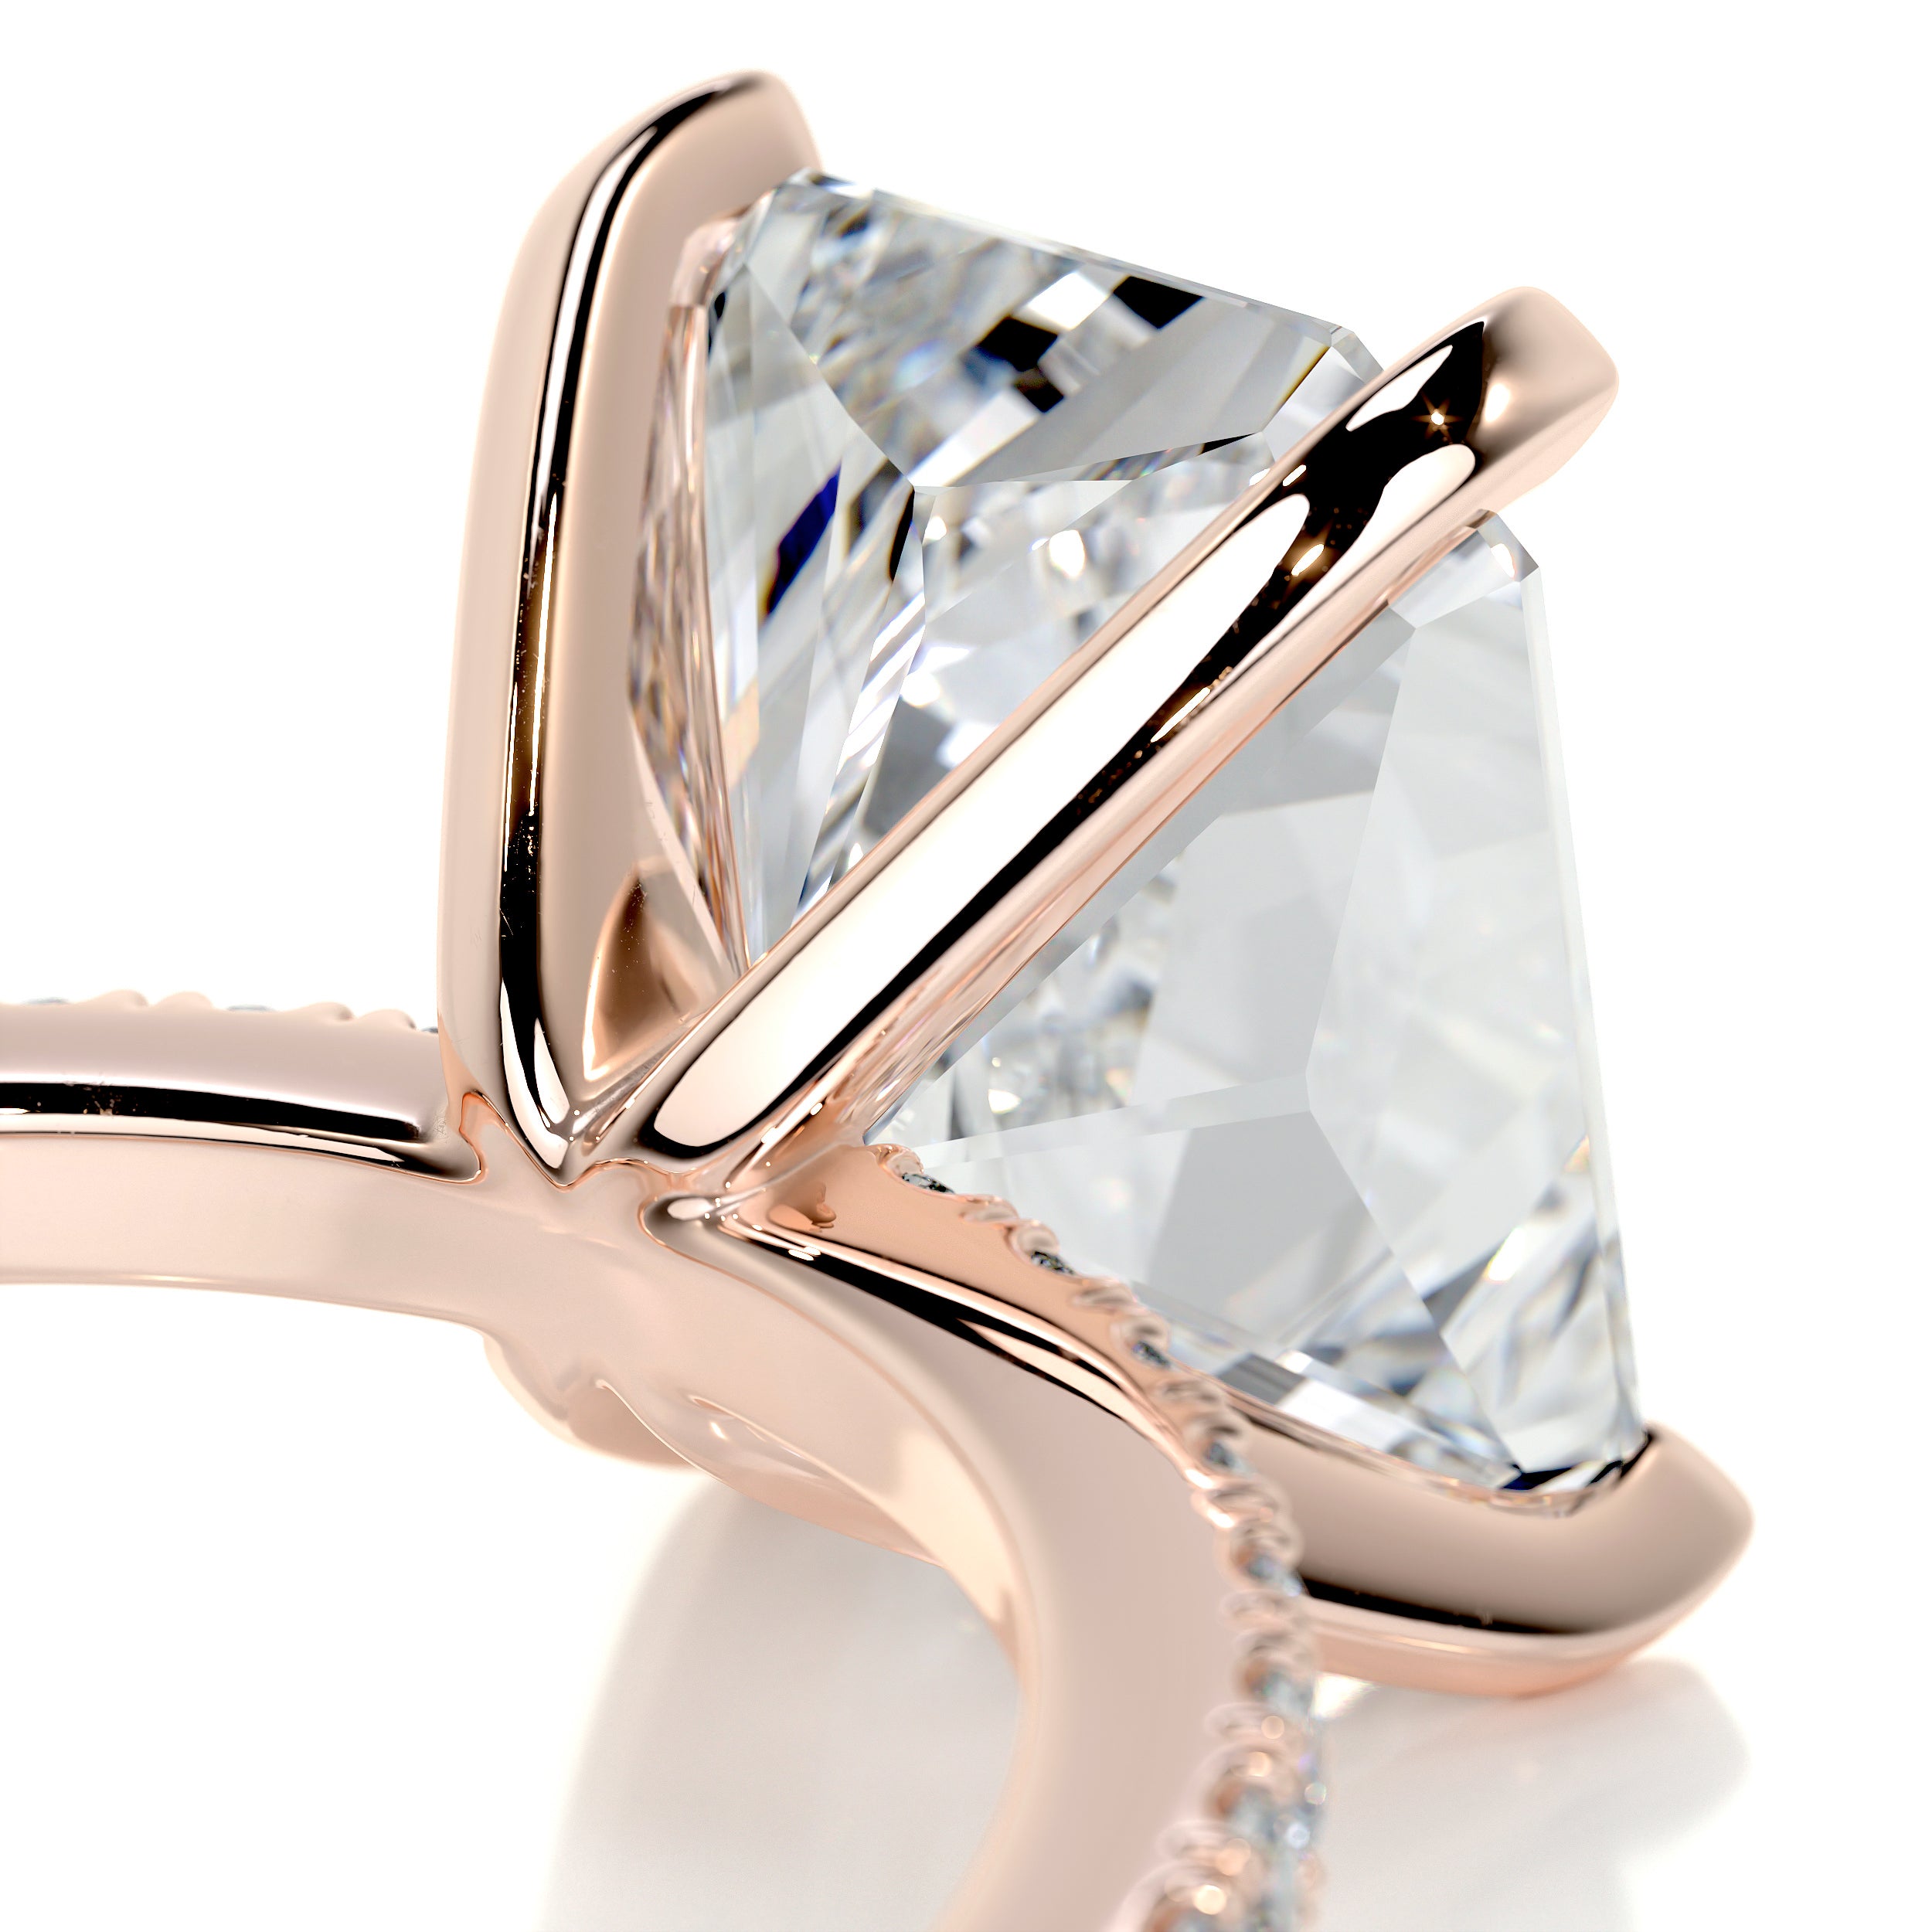 Audrey Diamond Engagement Ring   (3.5 Carat) -14K Rose Gold